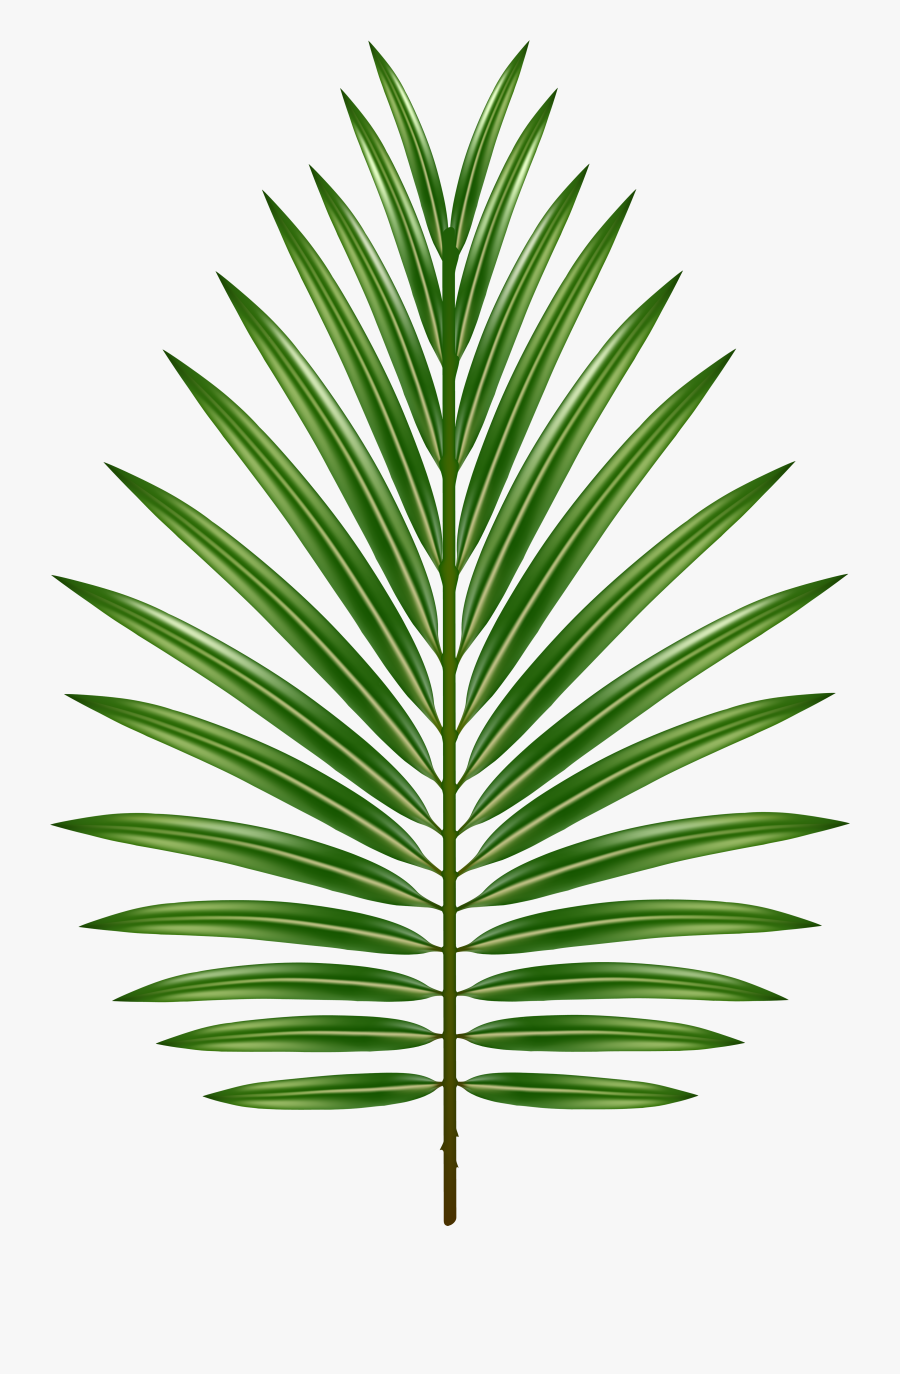 Palm Leaf Transparent Image, Transparent Clipart